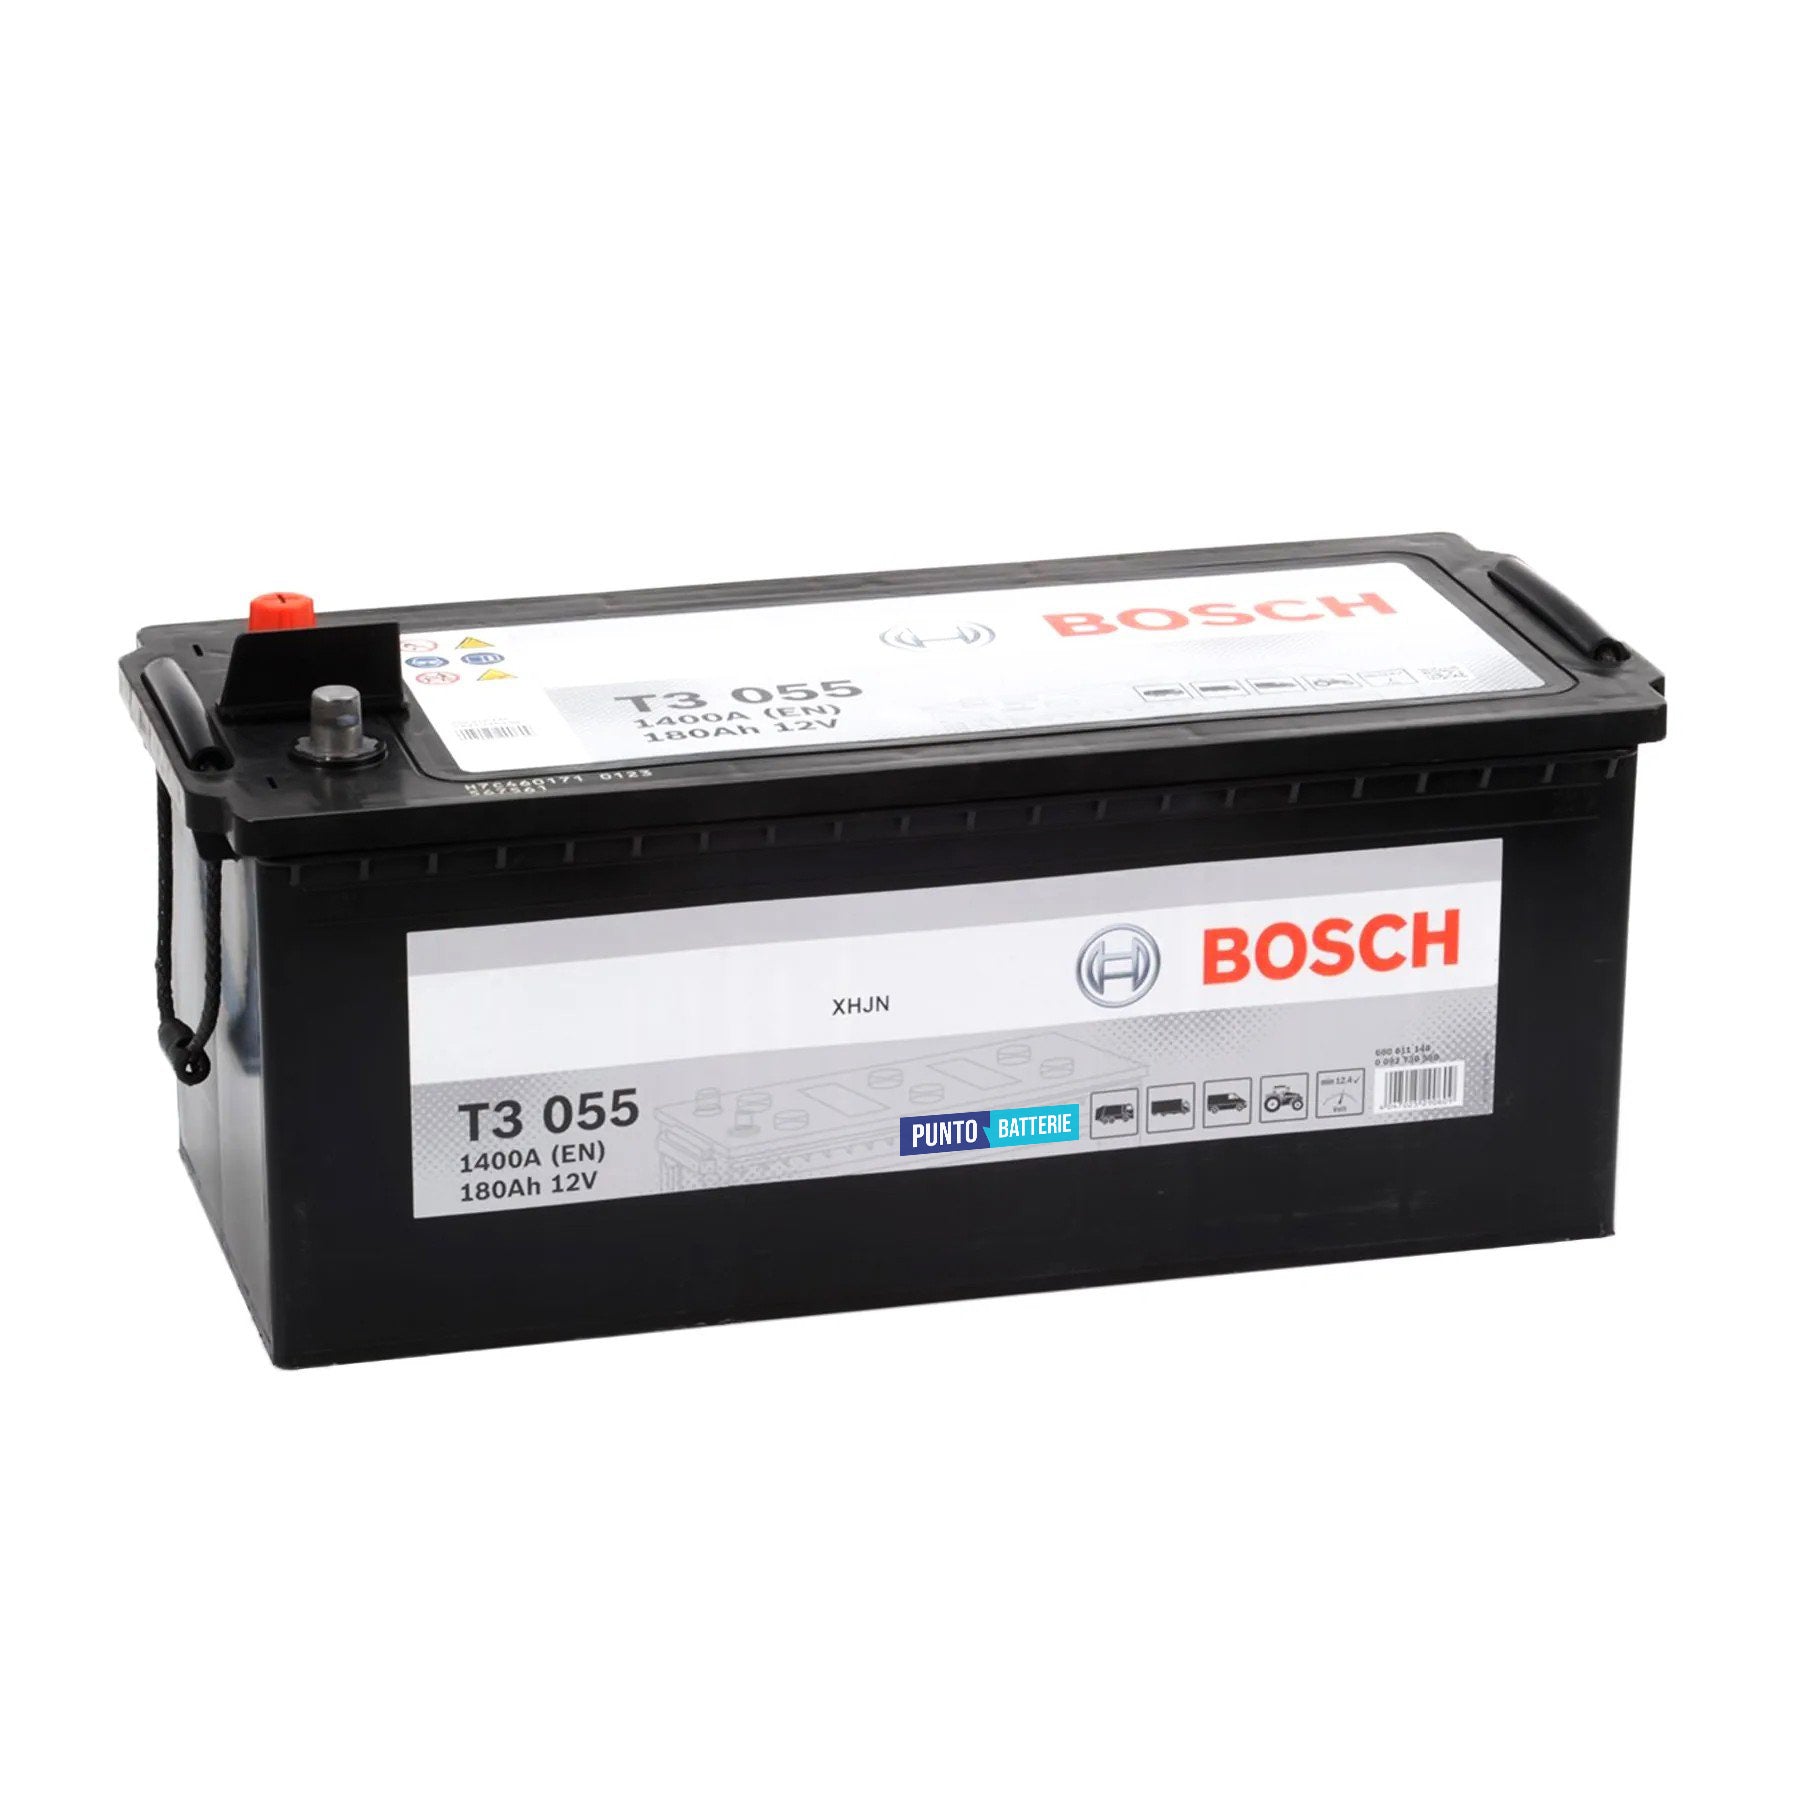 Batteria originale Bosch T3 T3055, dimensioni 513 x 223 x 223, polo positivo a sinistra, 12 volt, 180 amperora, 1400 ampere. Batteria per camion e veicoli pesanti.